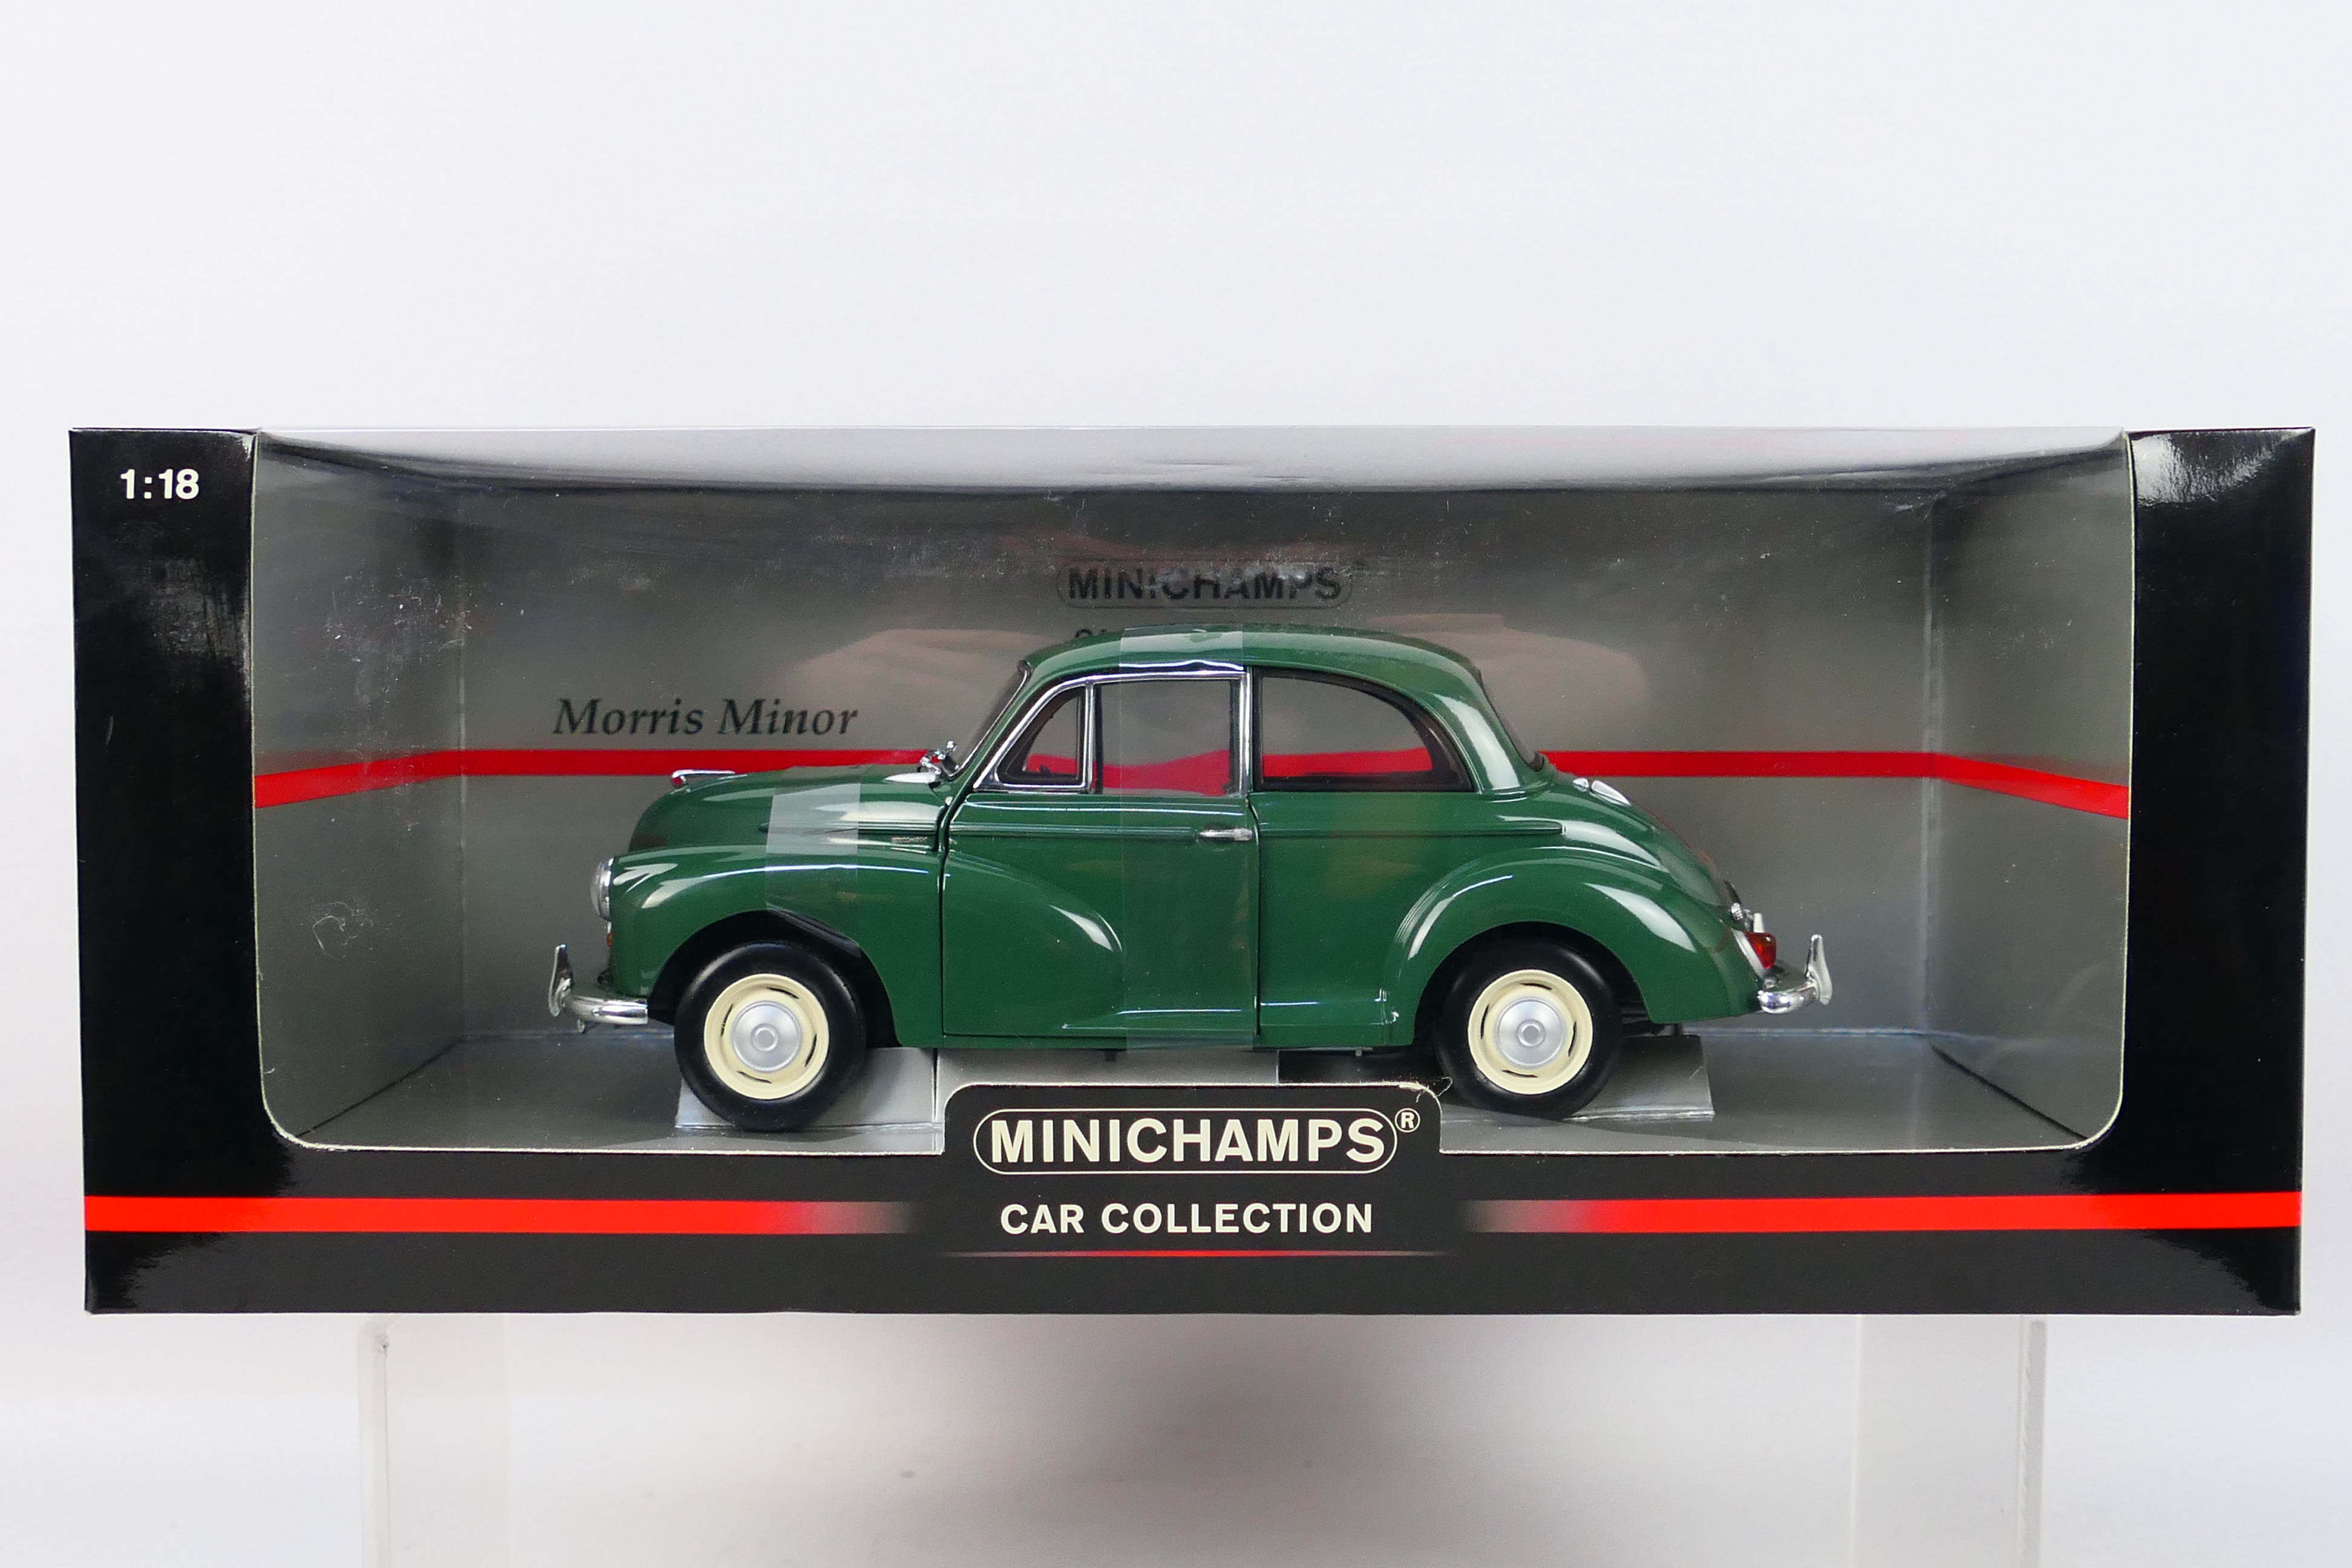 Minichamps - A boxed Minichamps 'Car Collection' #150137000 1:18 scale Morris Minor.